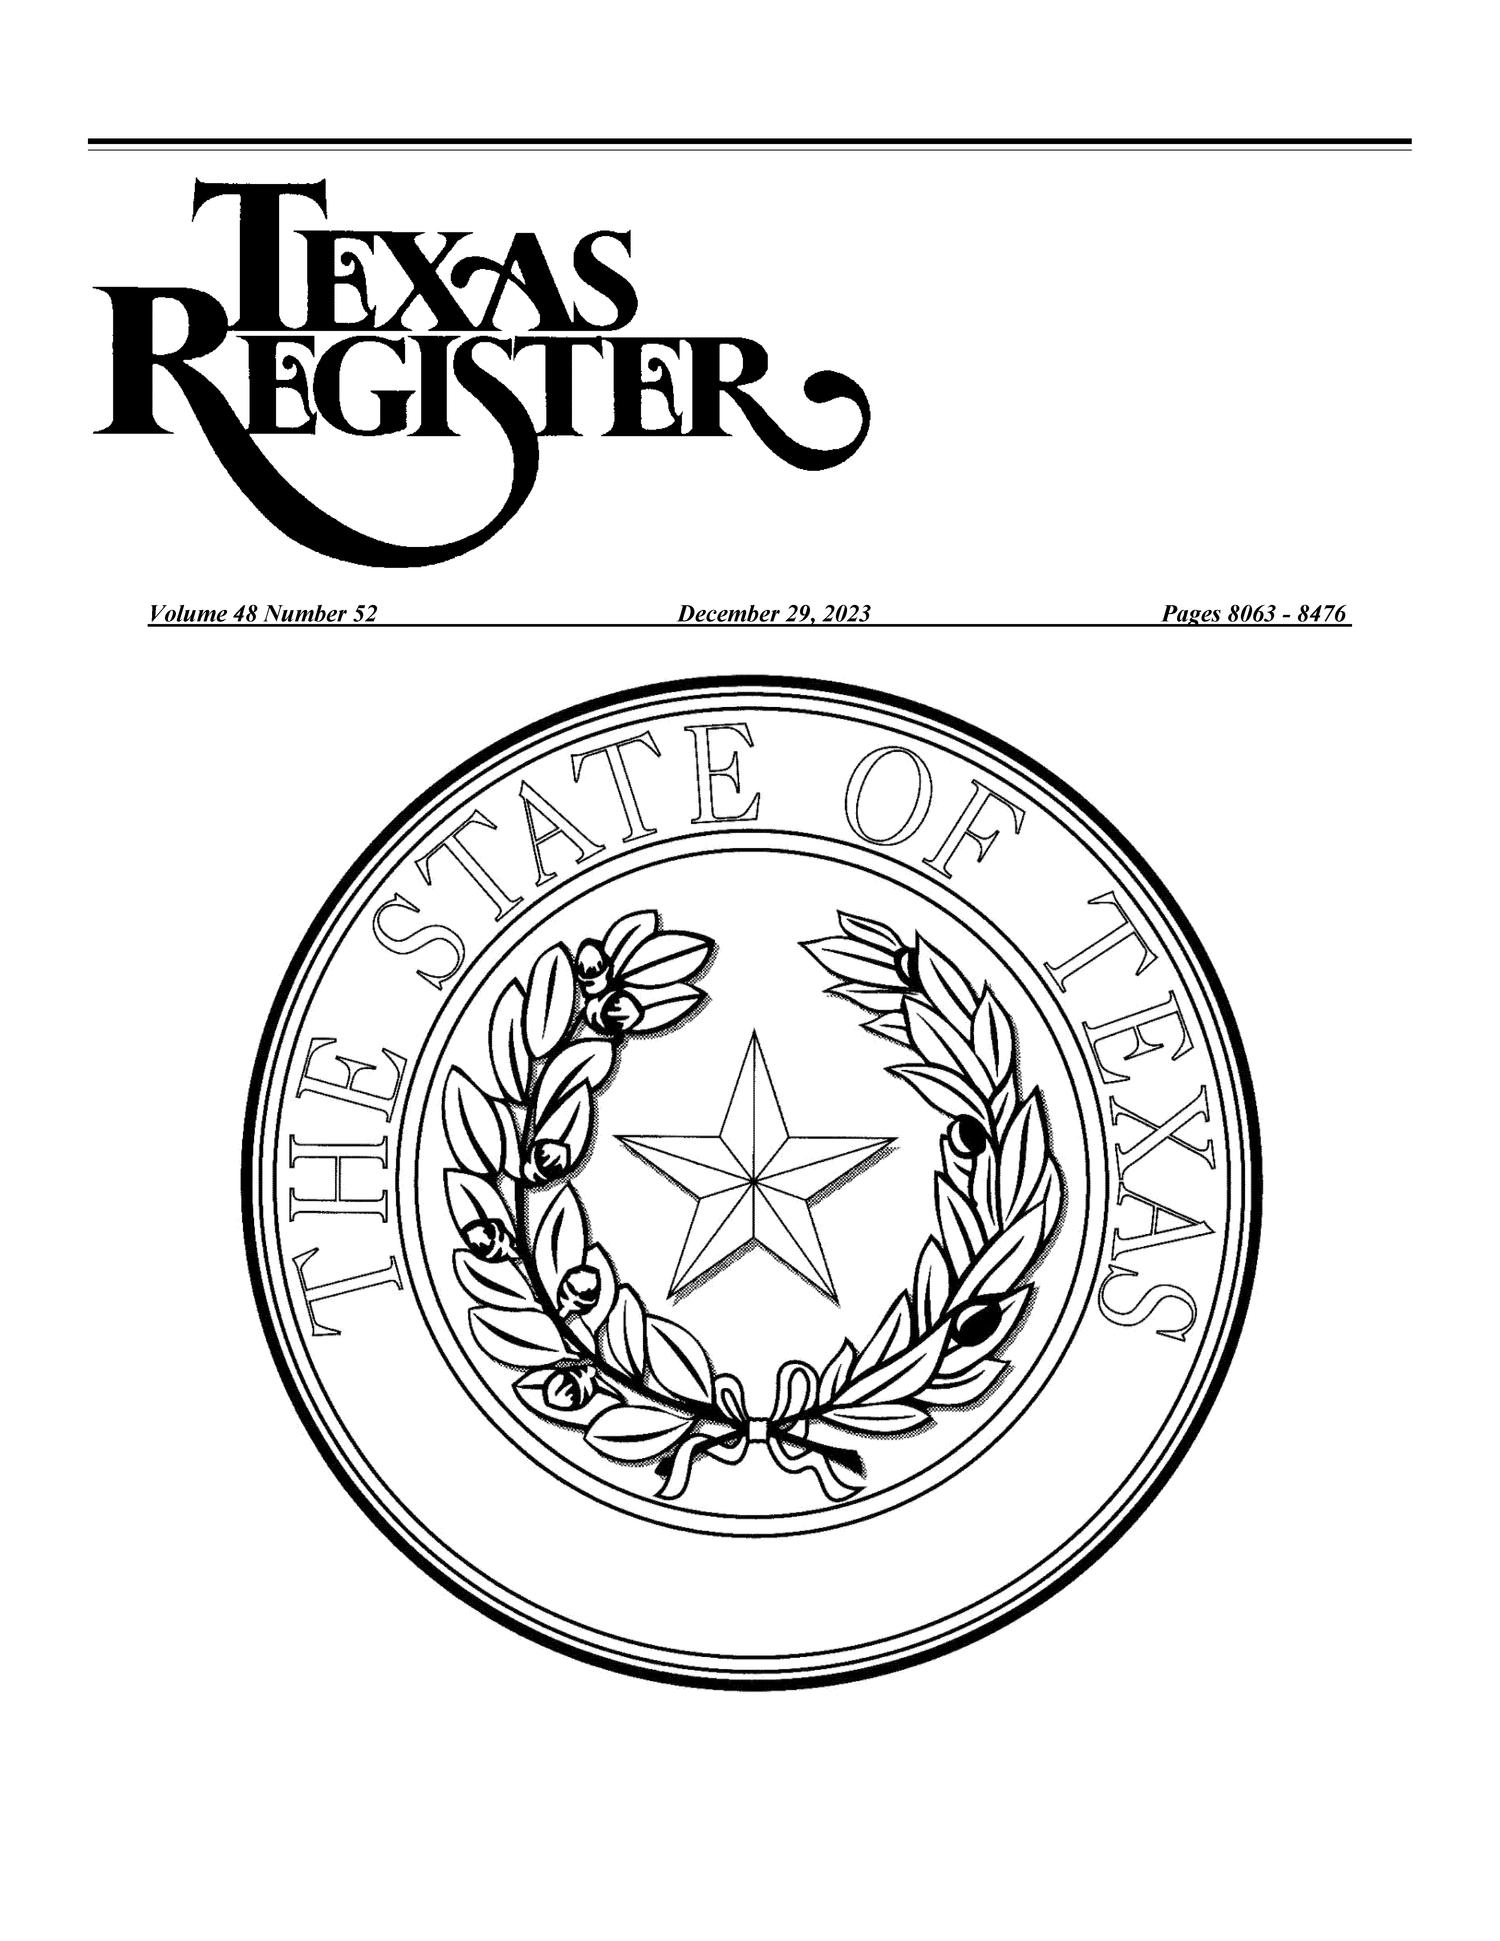 Texas Register, Volume 48, Number 52, Pages 8063-8476, December 29, 2023
                                                
                                                    8063
                                                